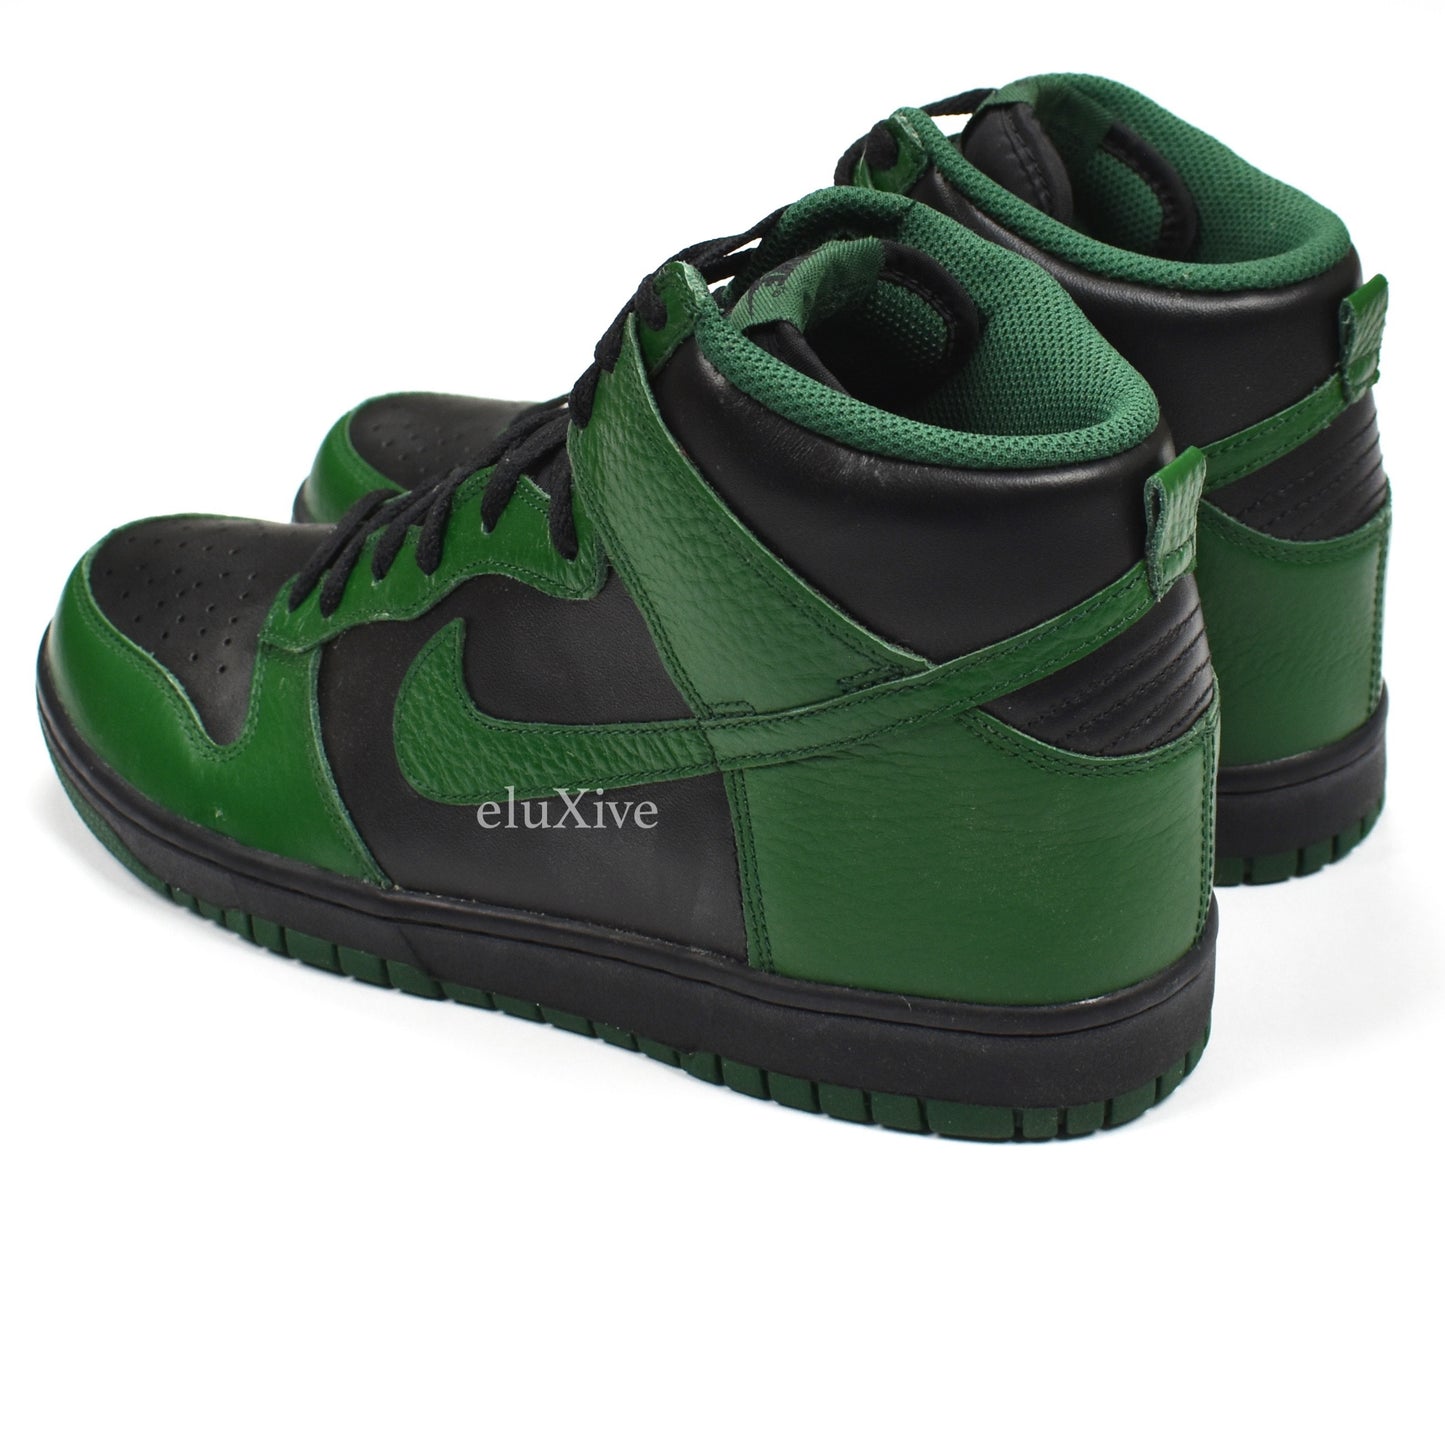 Nike - Dunk High 'College Black Pack' (Gorge Green)